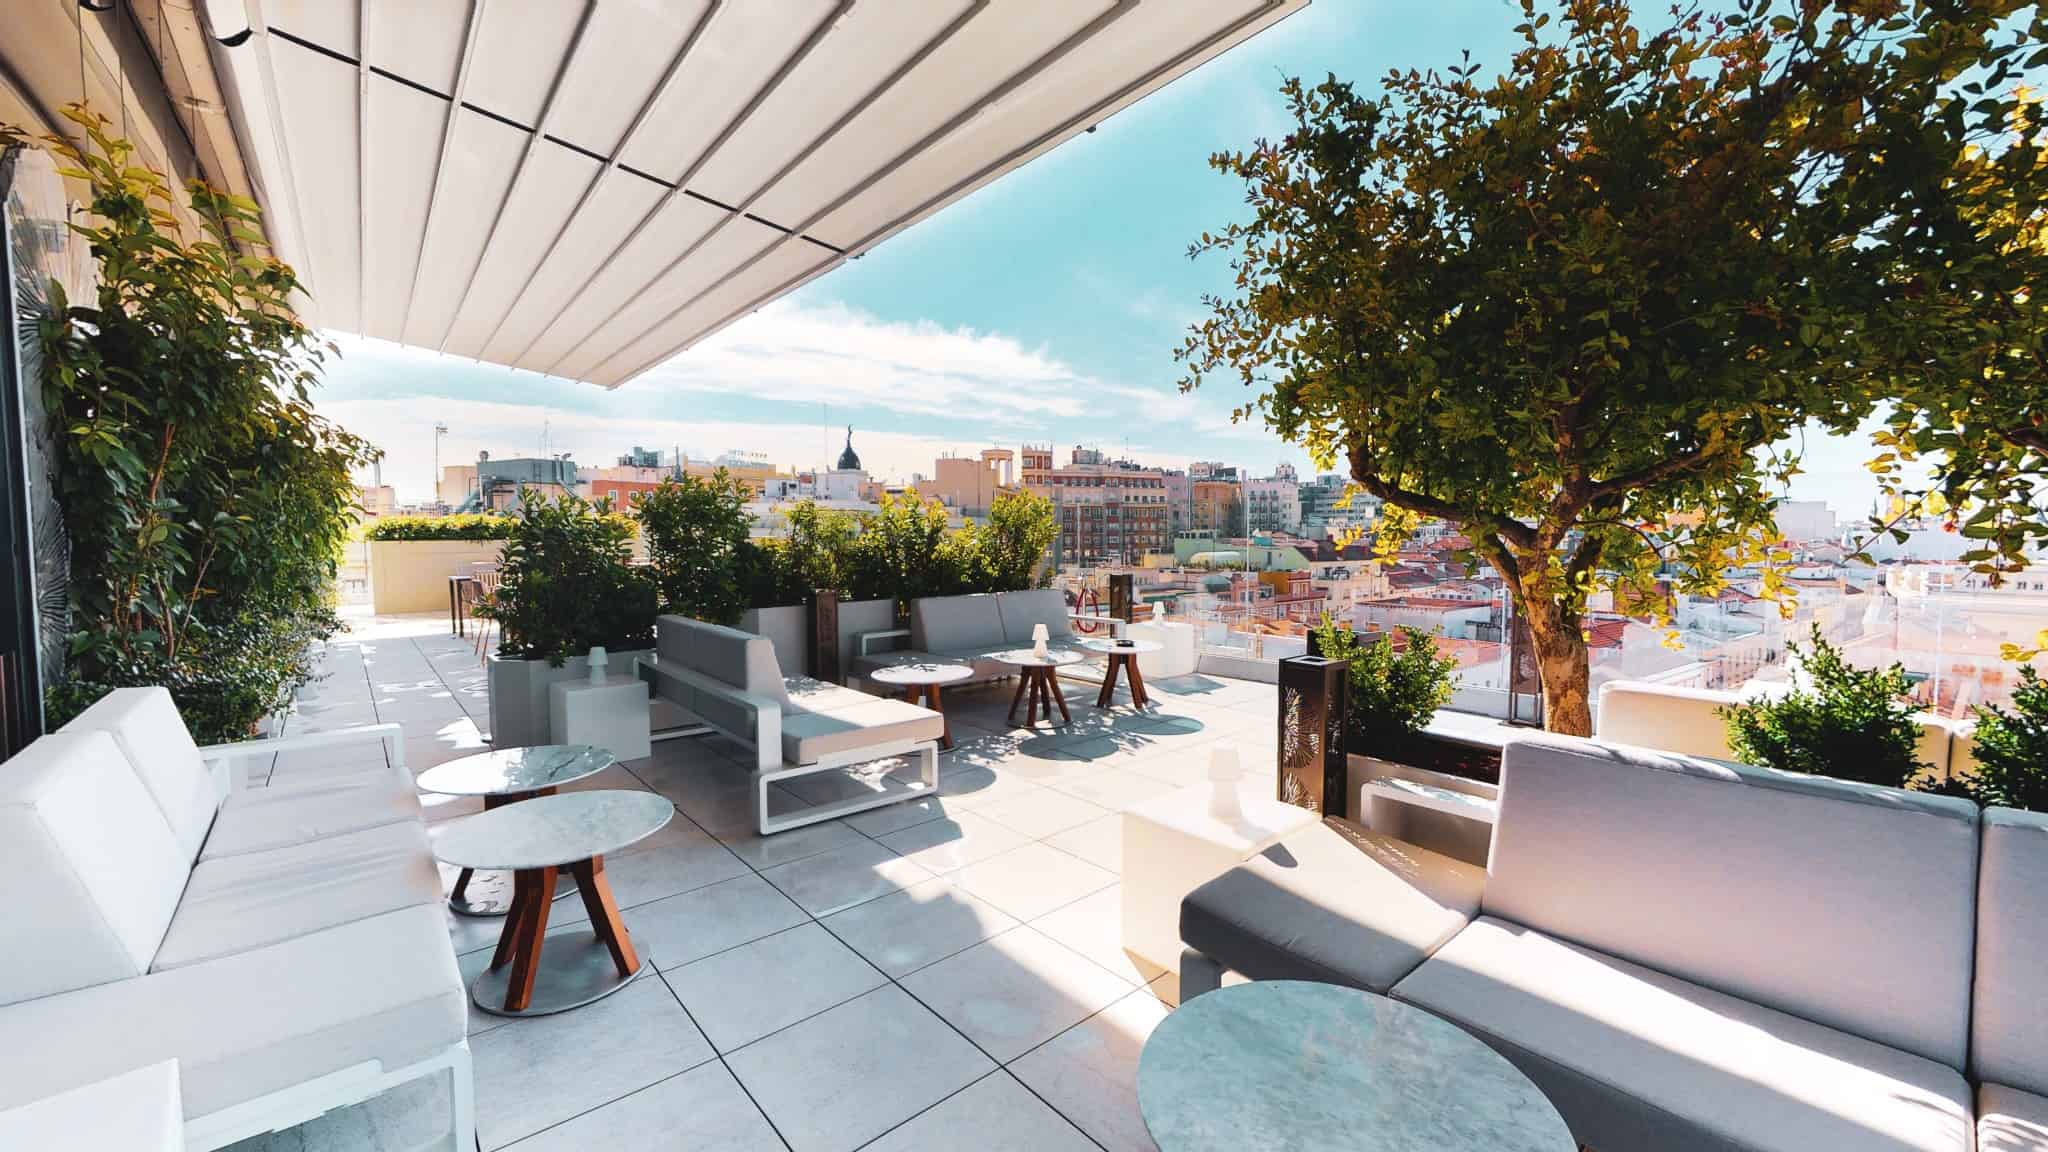 Las Mejores Terrazas en Madrid para el Verano 2019 - Travelodge Hoteles